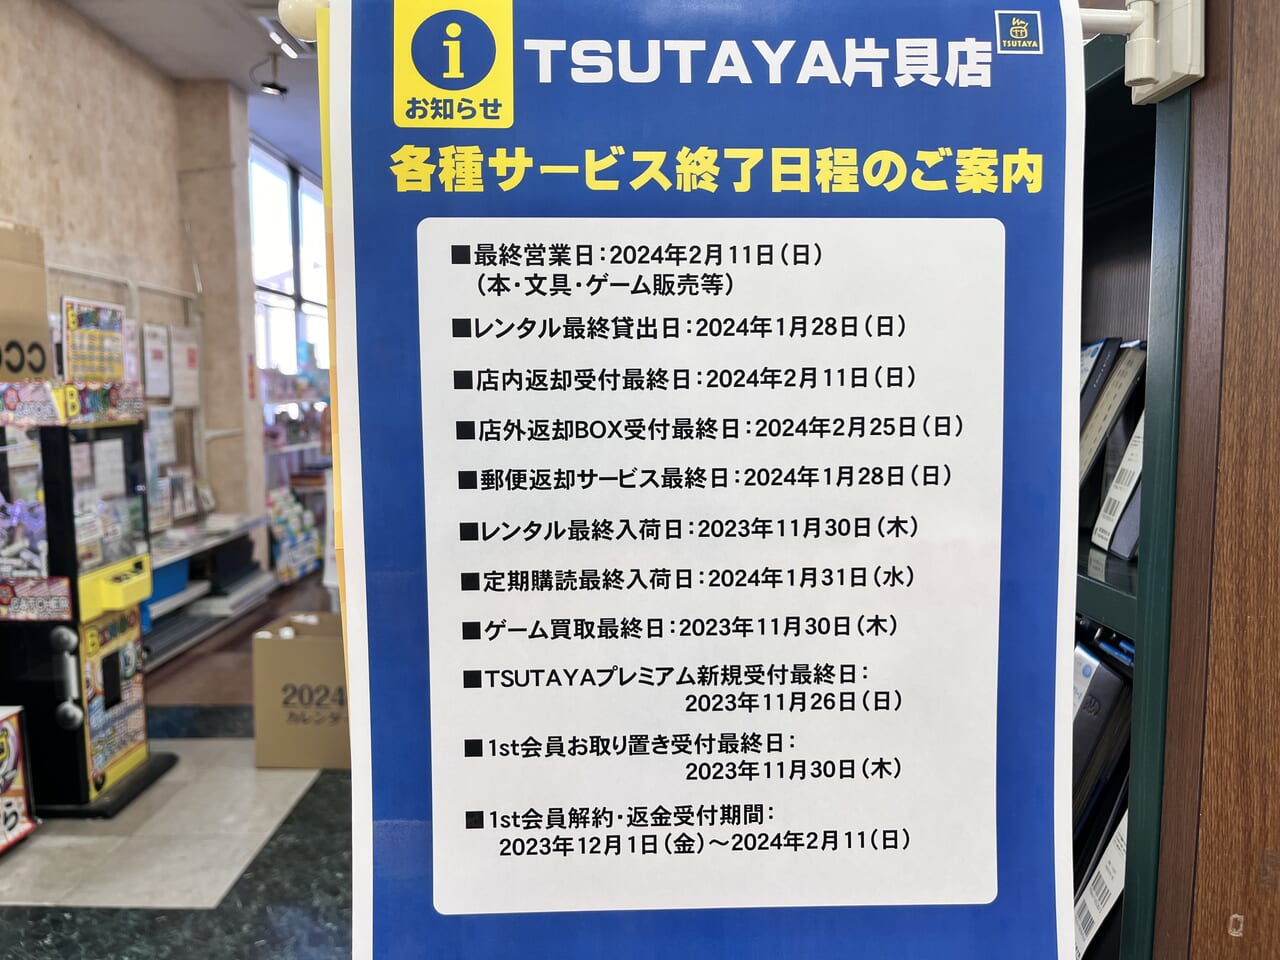 「TSUTAYA片貝店」各種サービス終了日程の案内